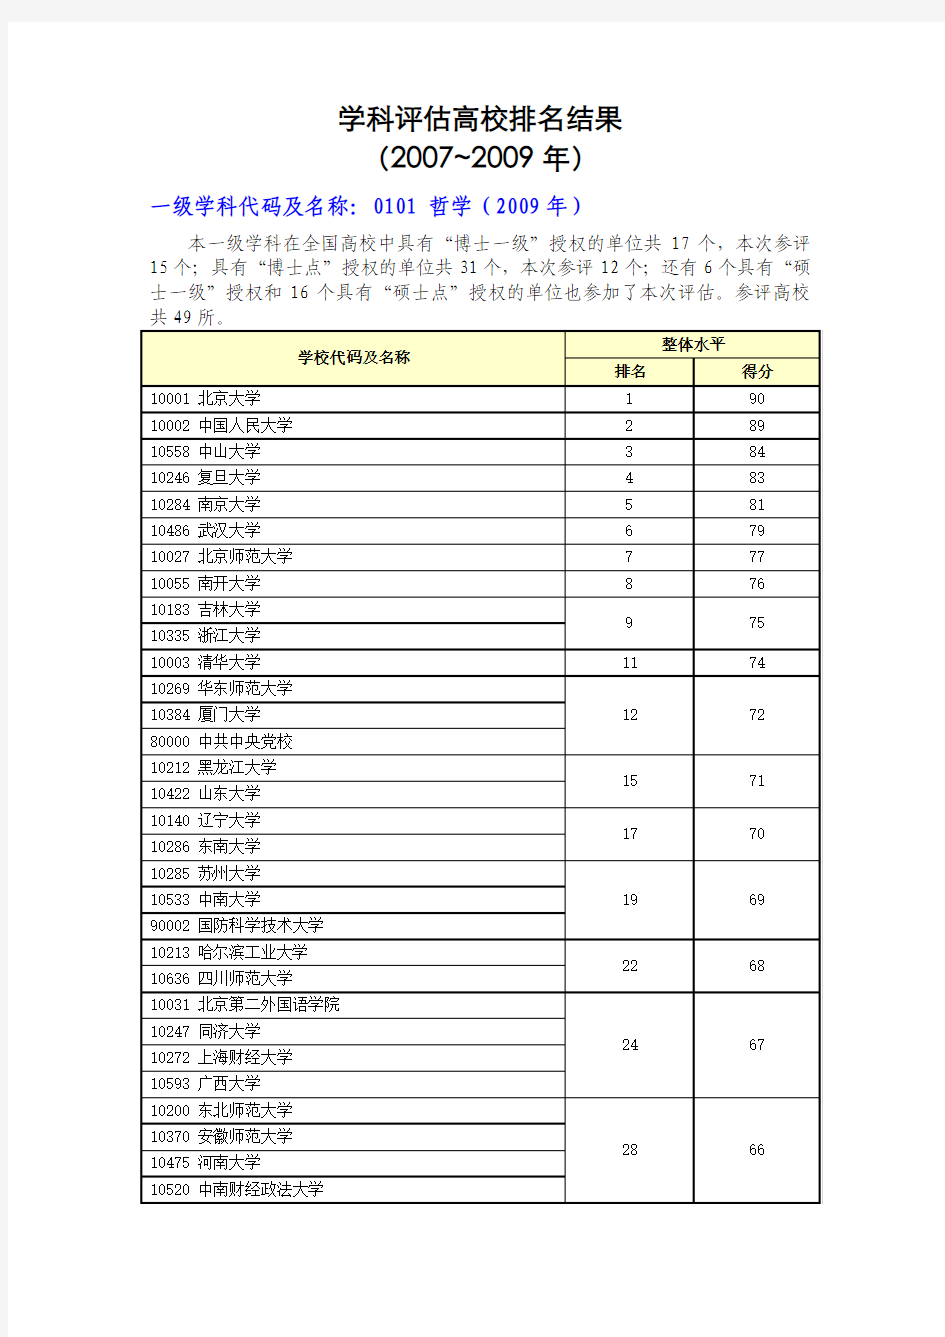 学科评估高校排名结果(2007~2009年)